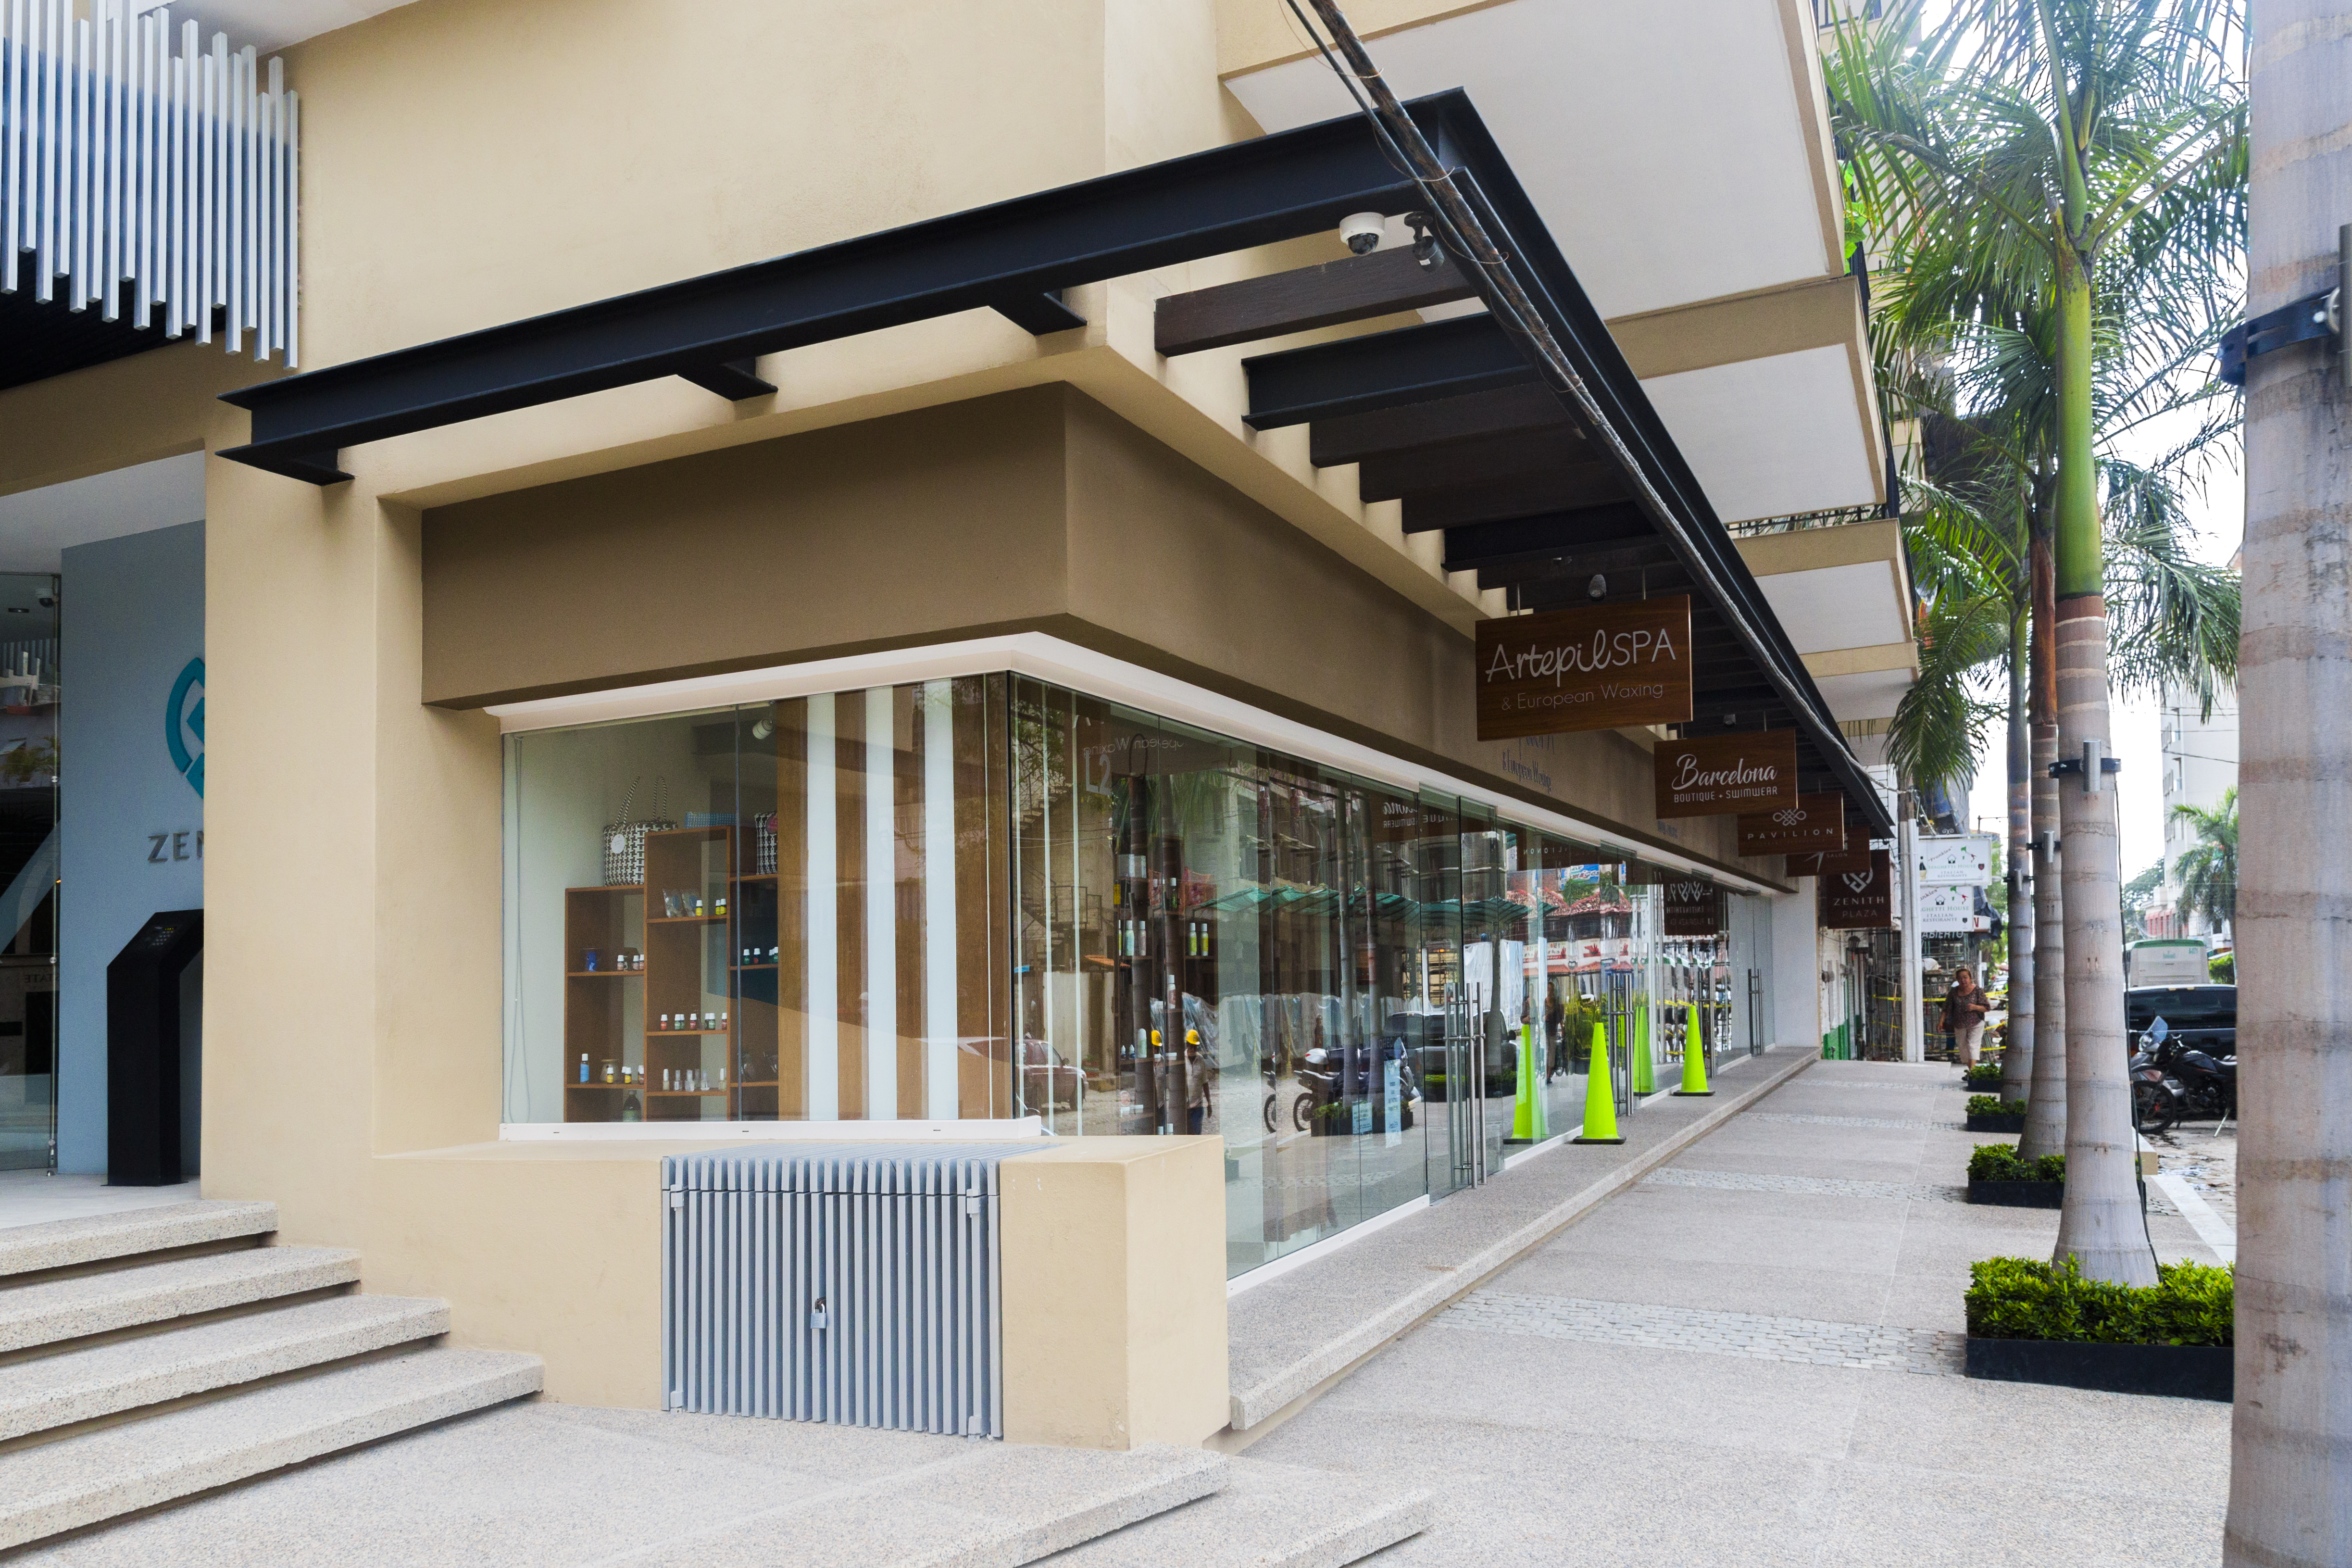 Premises in Shopping Centers vs Condominium Commercial Spaces